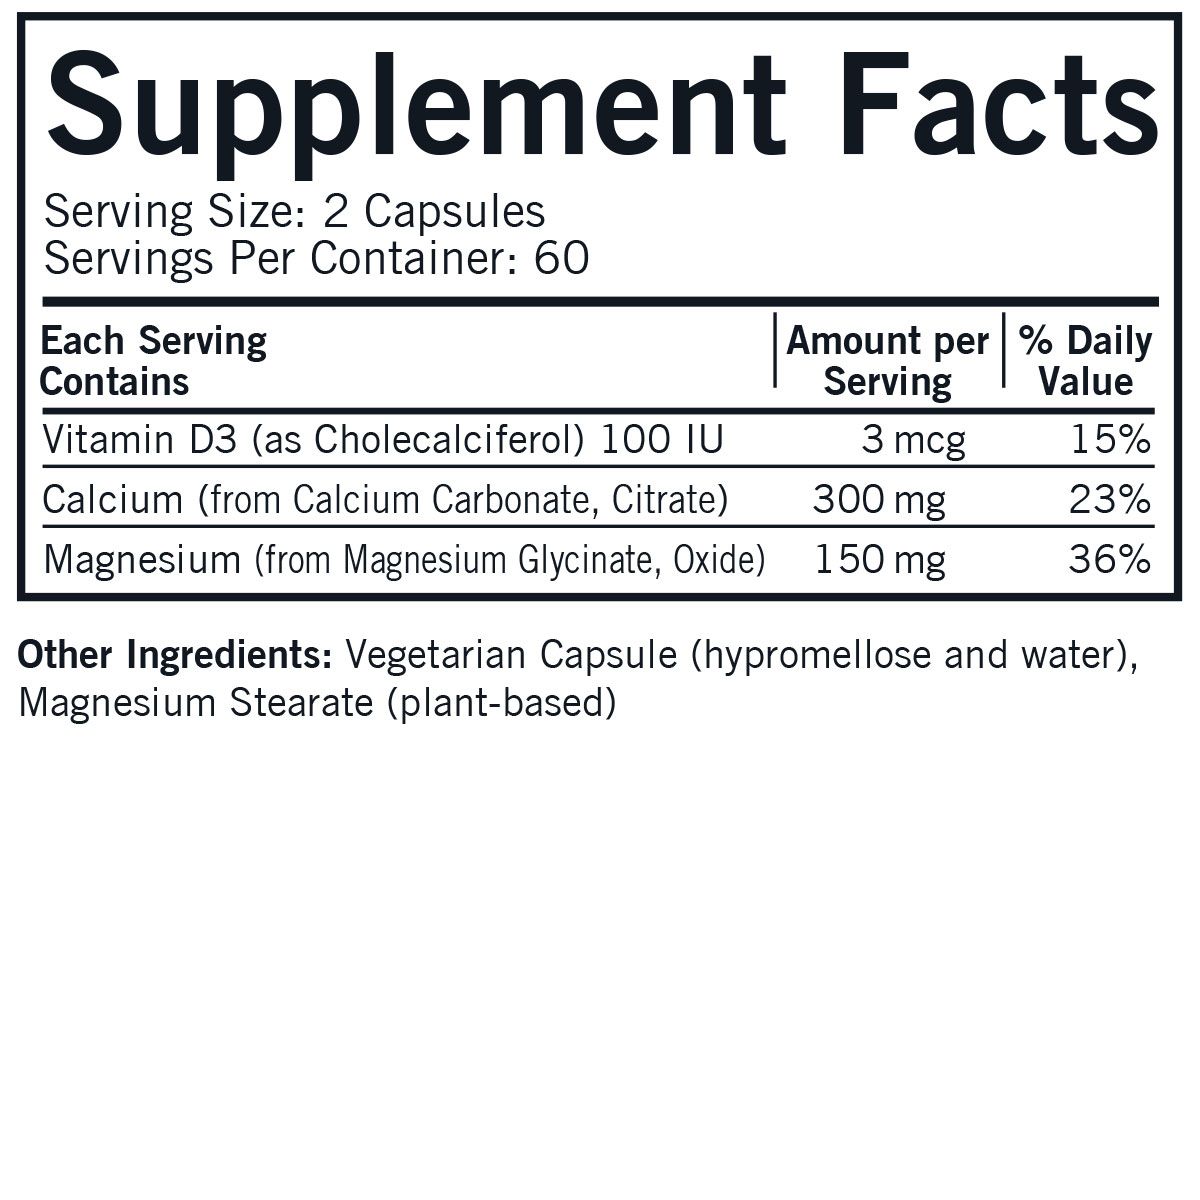 Calcium & Magnesium with Vitamin D - Hypoallergenic